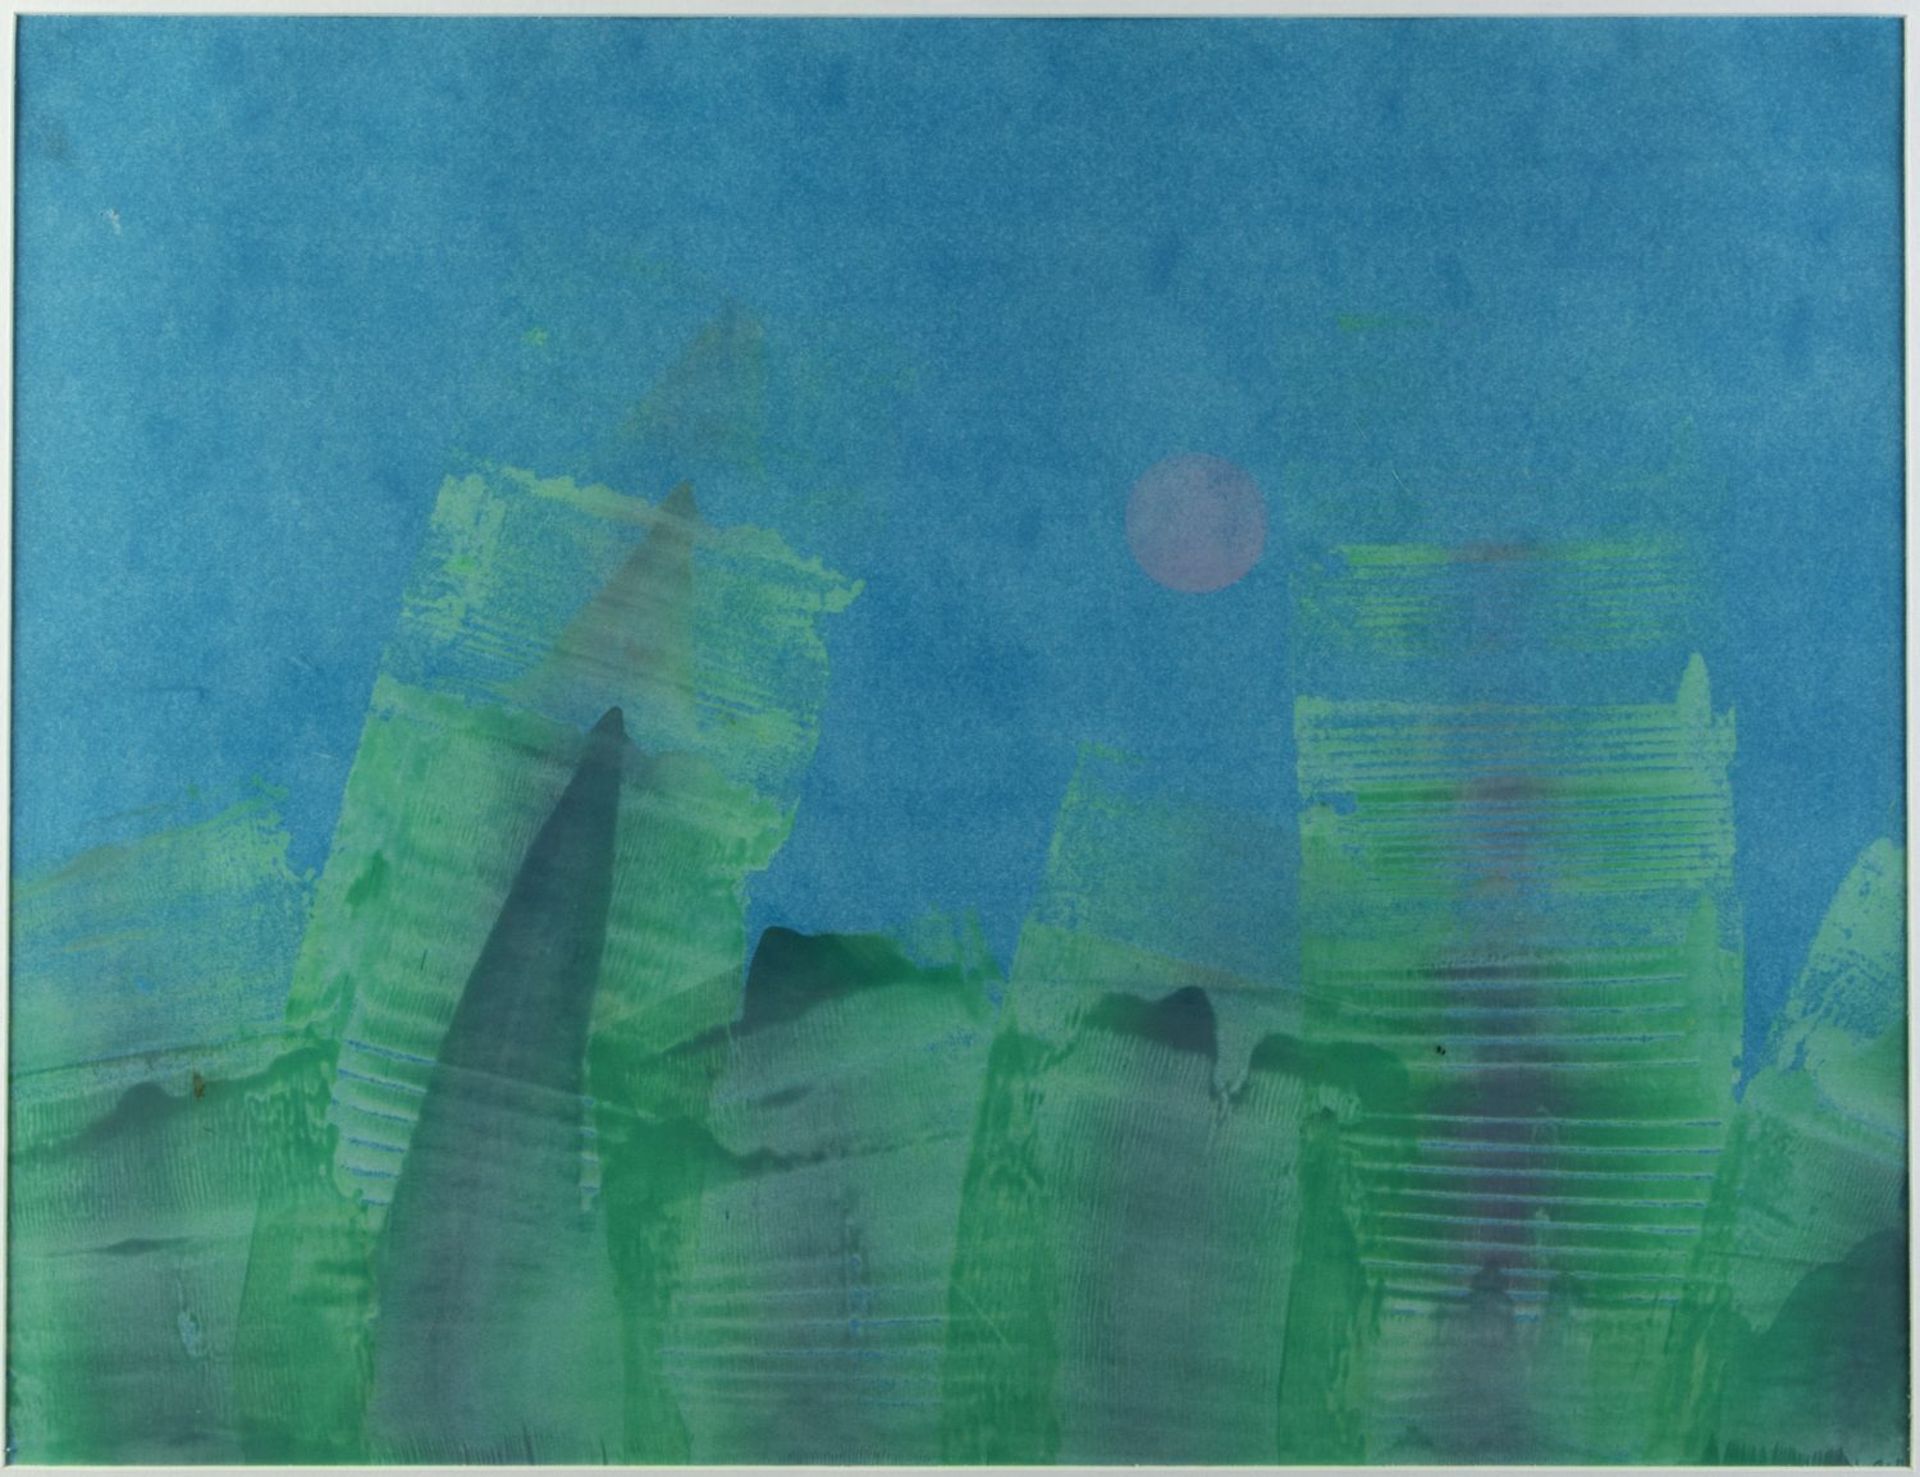 Leppien, Jean u.a. Komposition mit einem Kreis. Variation blau/grün rote Sonne u.a. 2 Farbse - Bild 3 aus 7